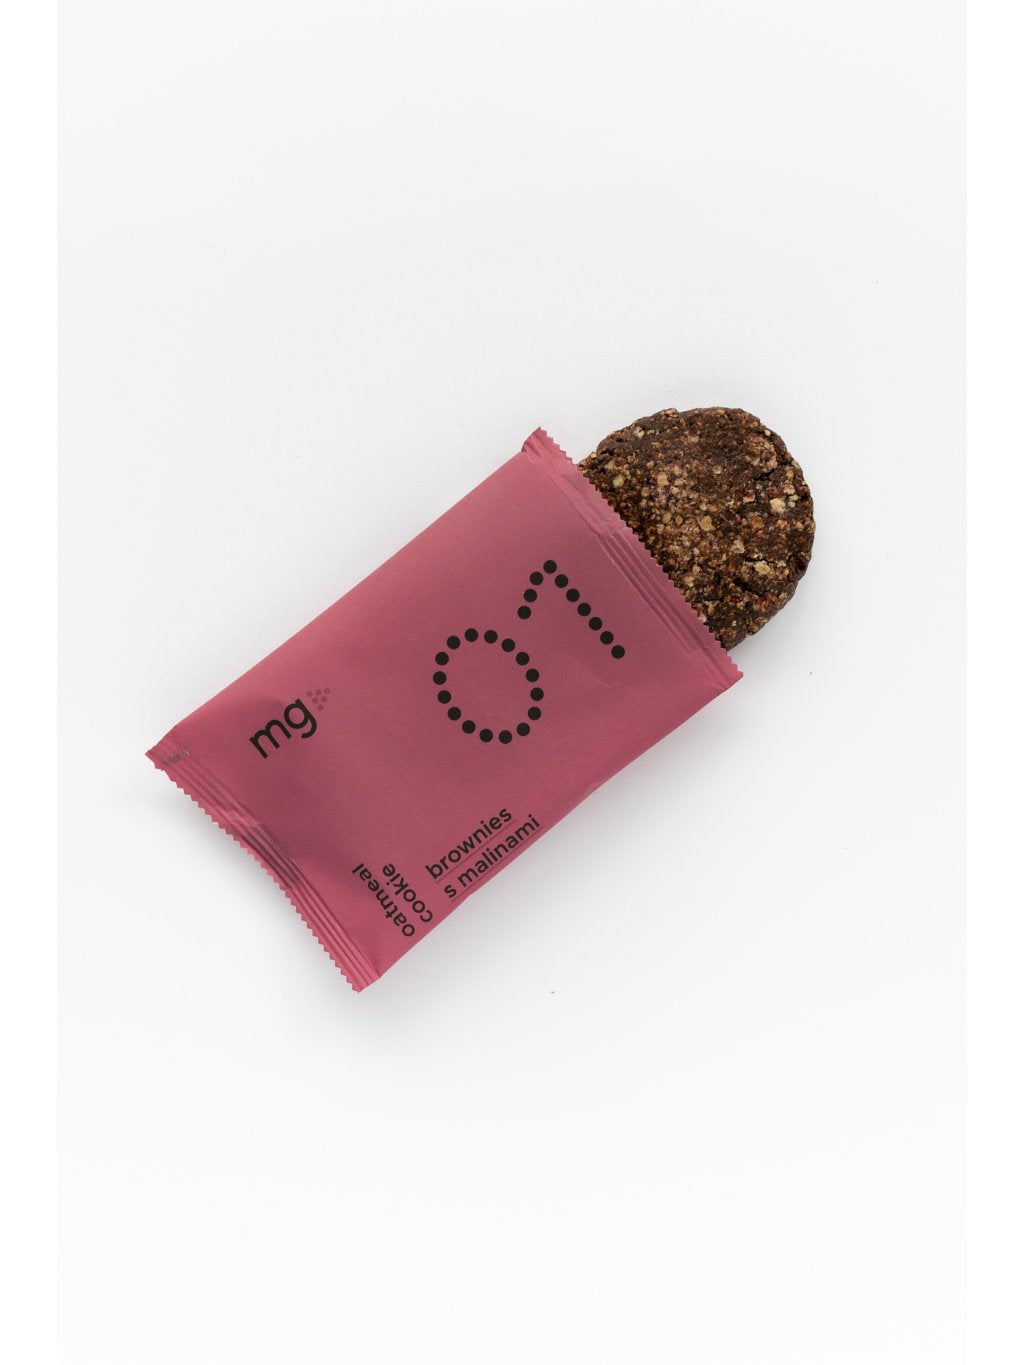 MG – Cookie 01 - Brownies with raspberries